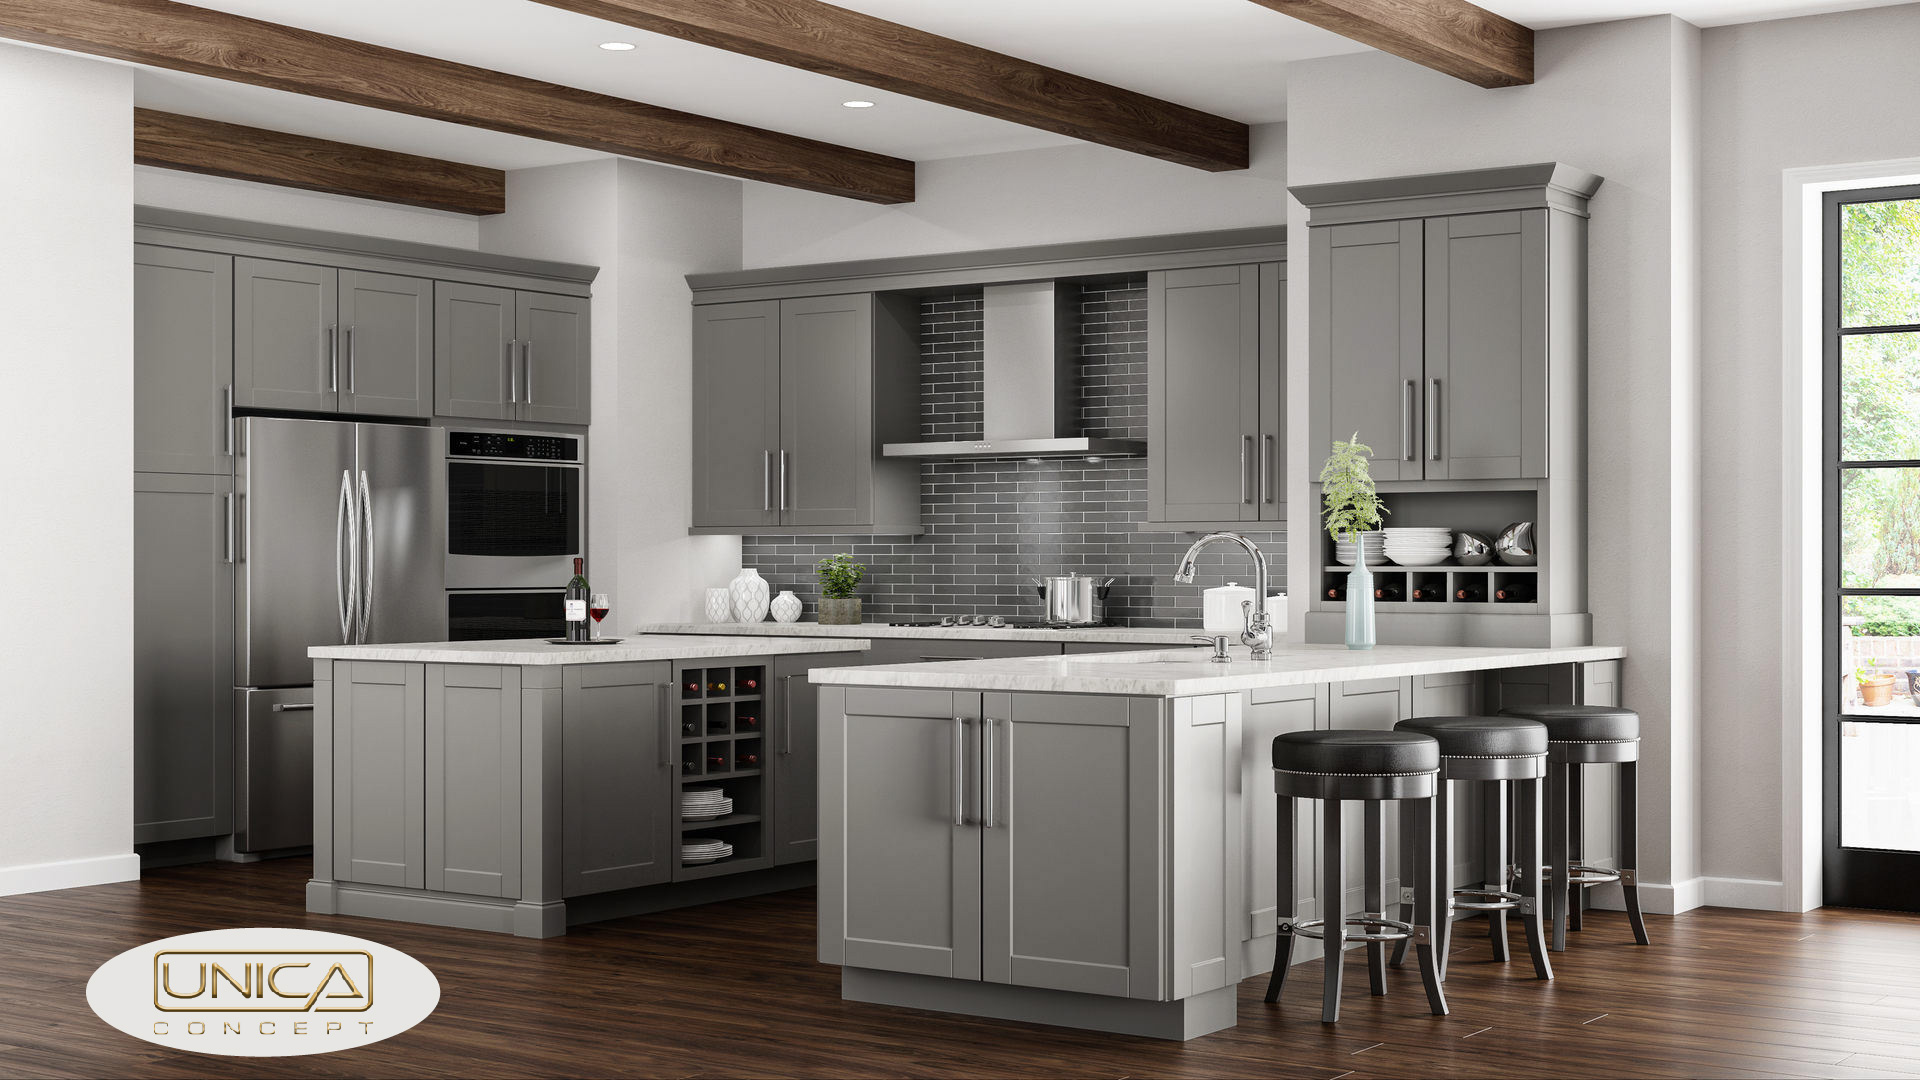 gray kitchen cabinet designs - unica concept - unica new